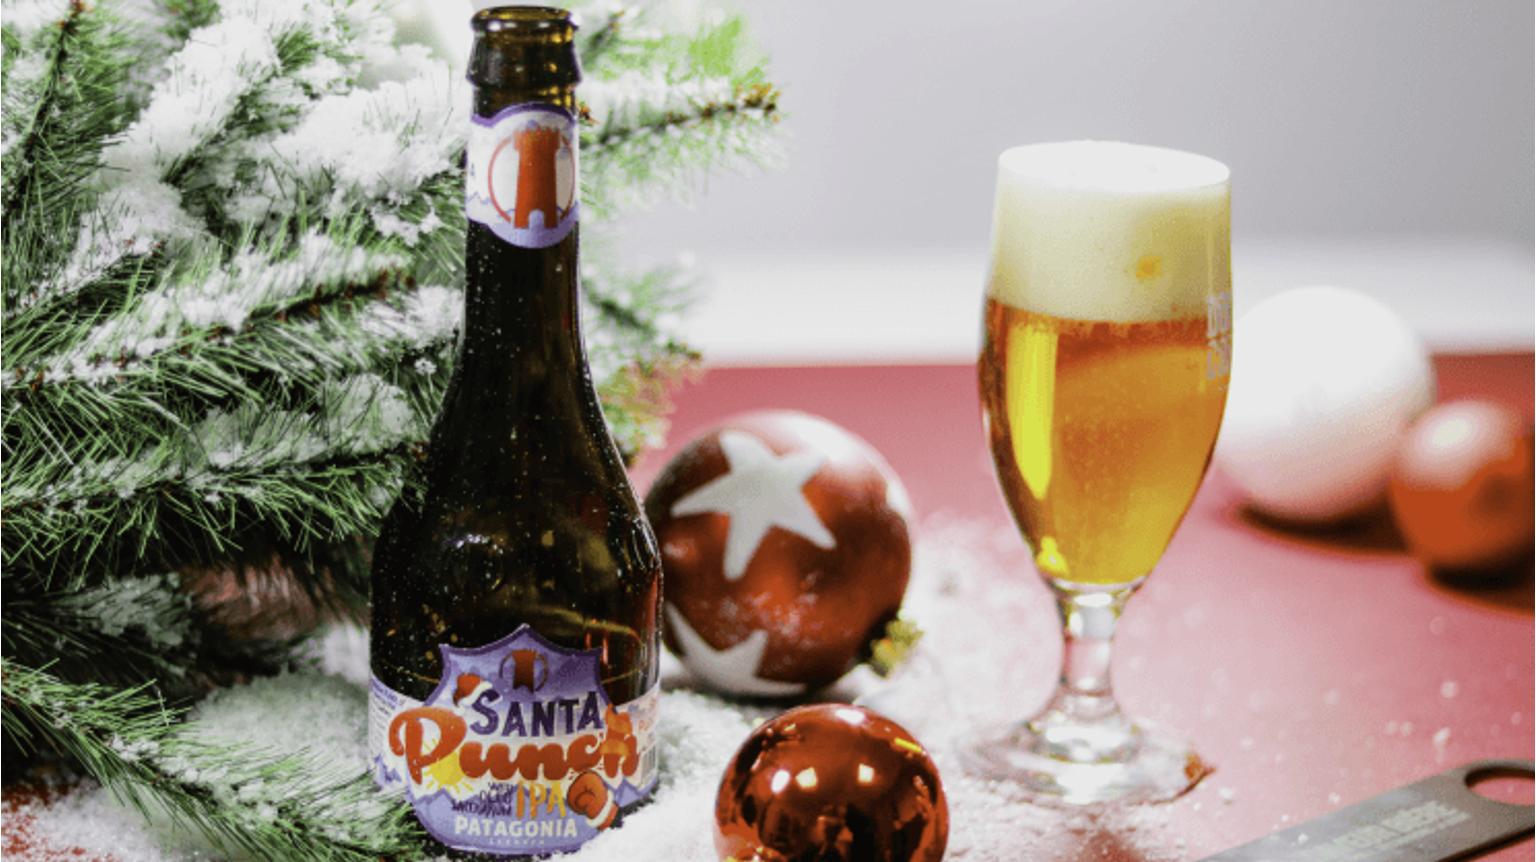 thumbnail for blog article named: Beery Christmas Day 18: Birra Del Borgo & Patagonia Santa Punch